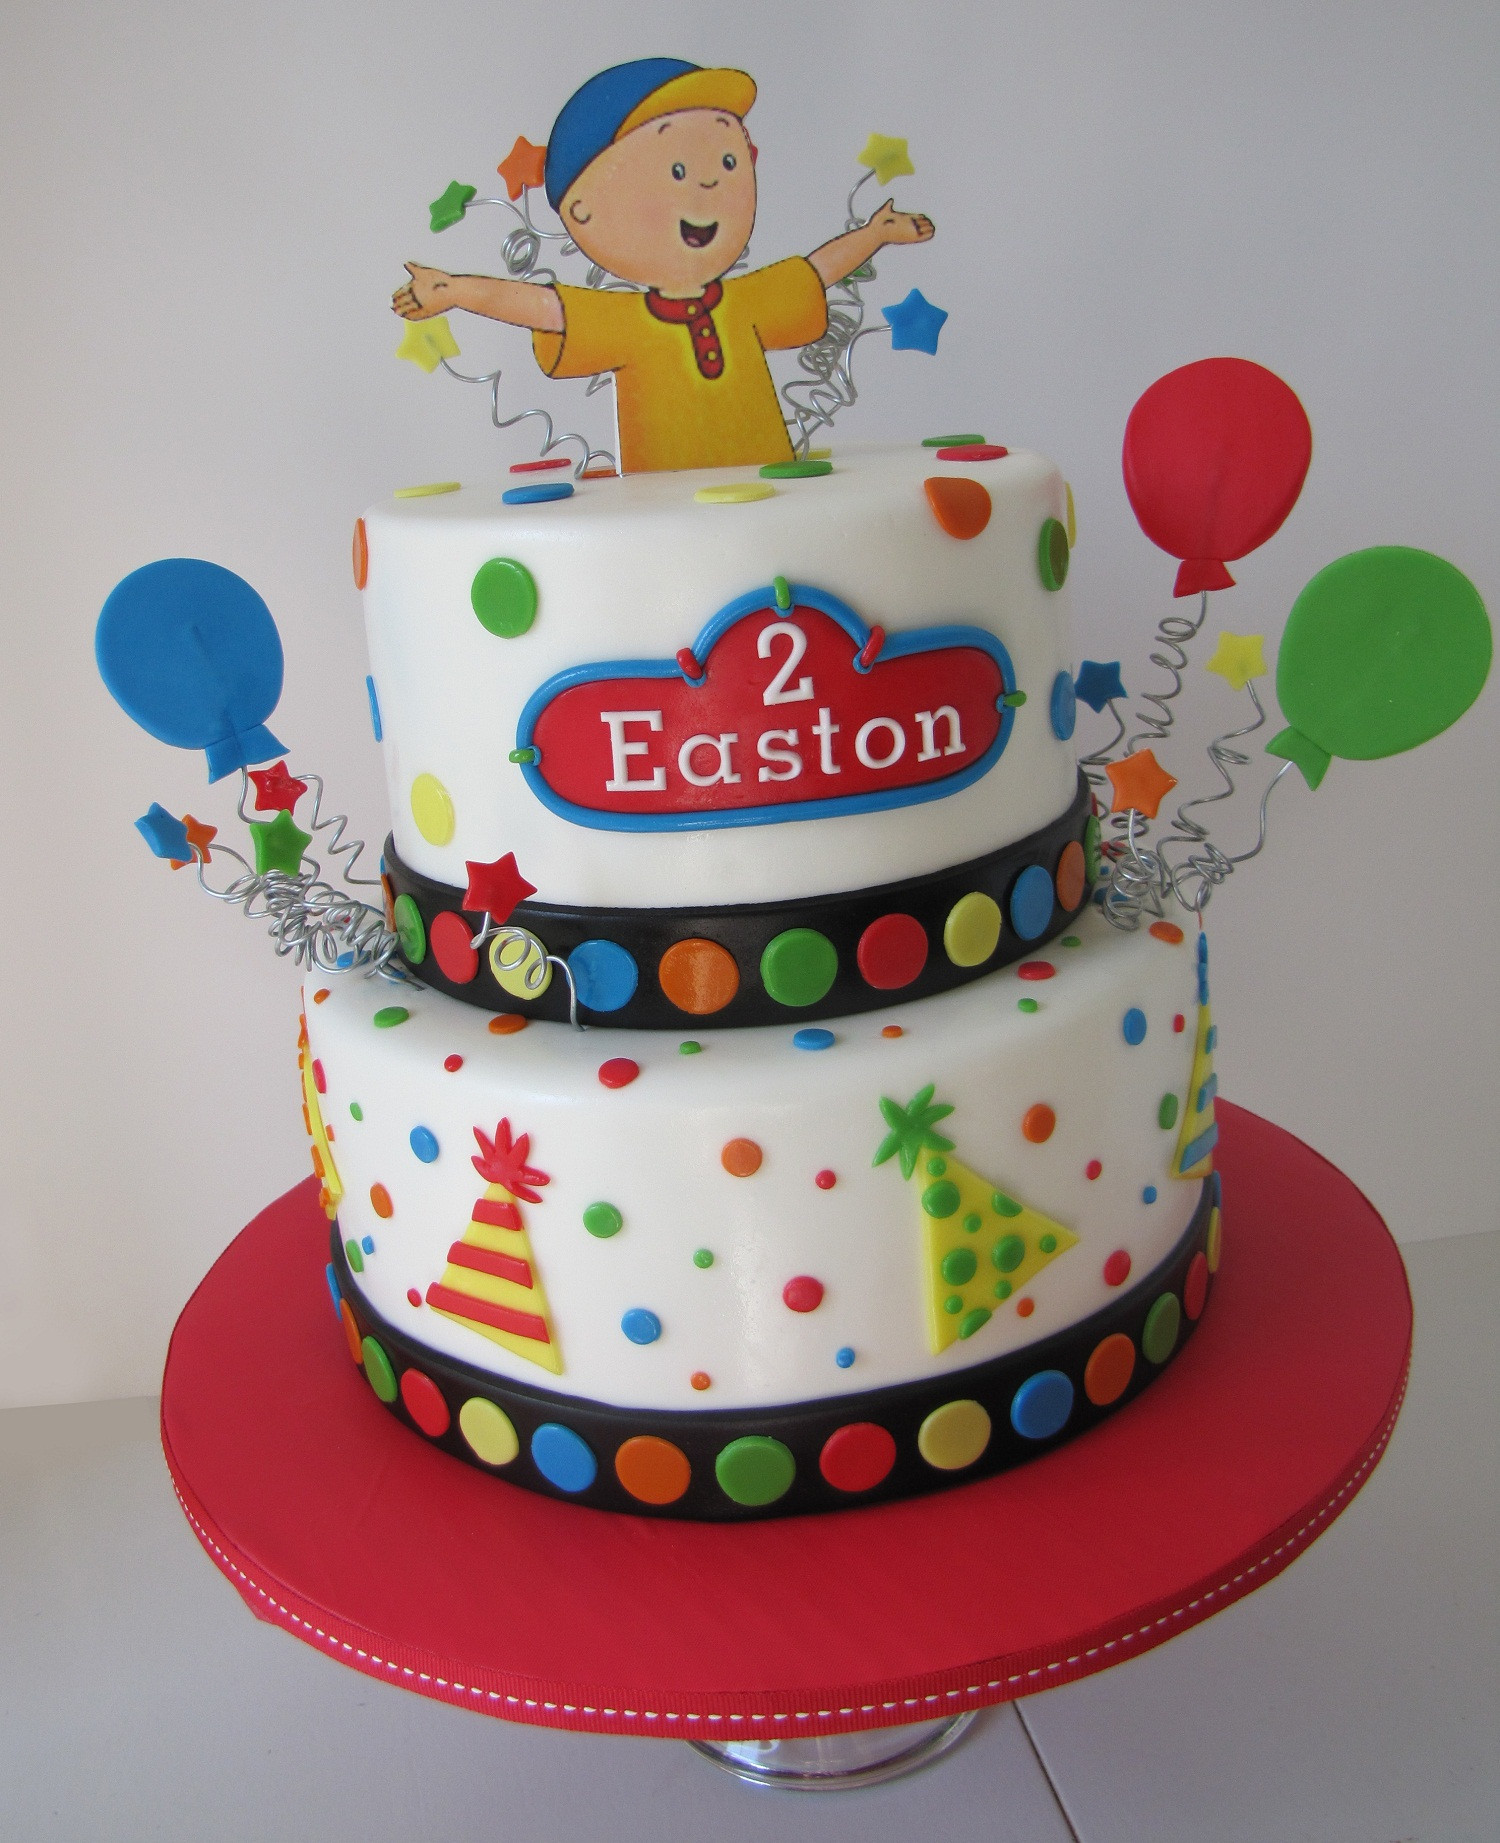 Caillou Birthday Cakes
 Caillou Birthday Cakes – Decoration Ideas